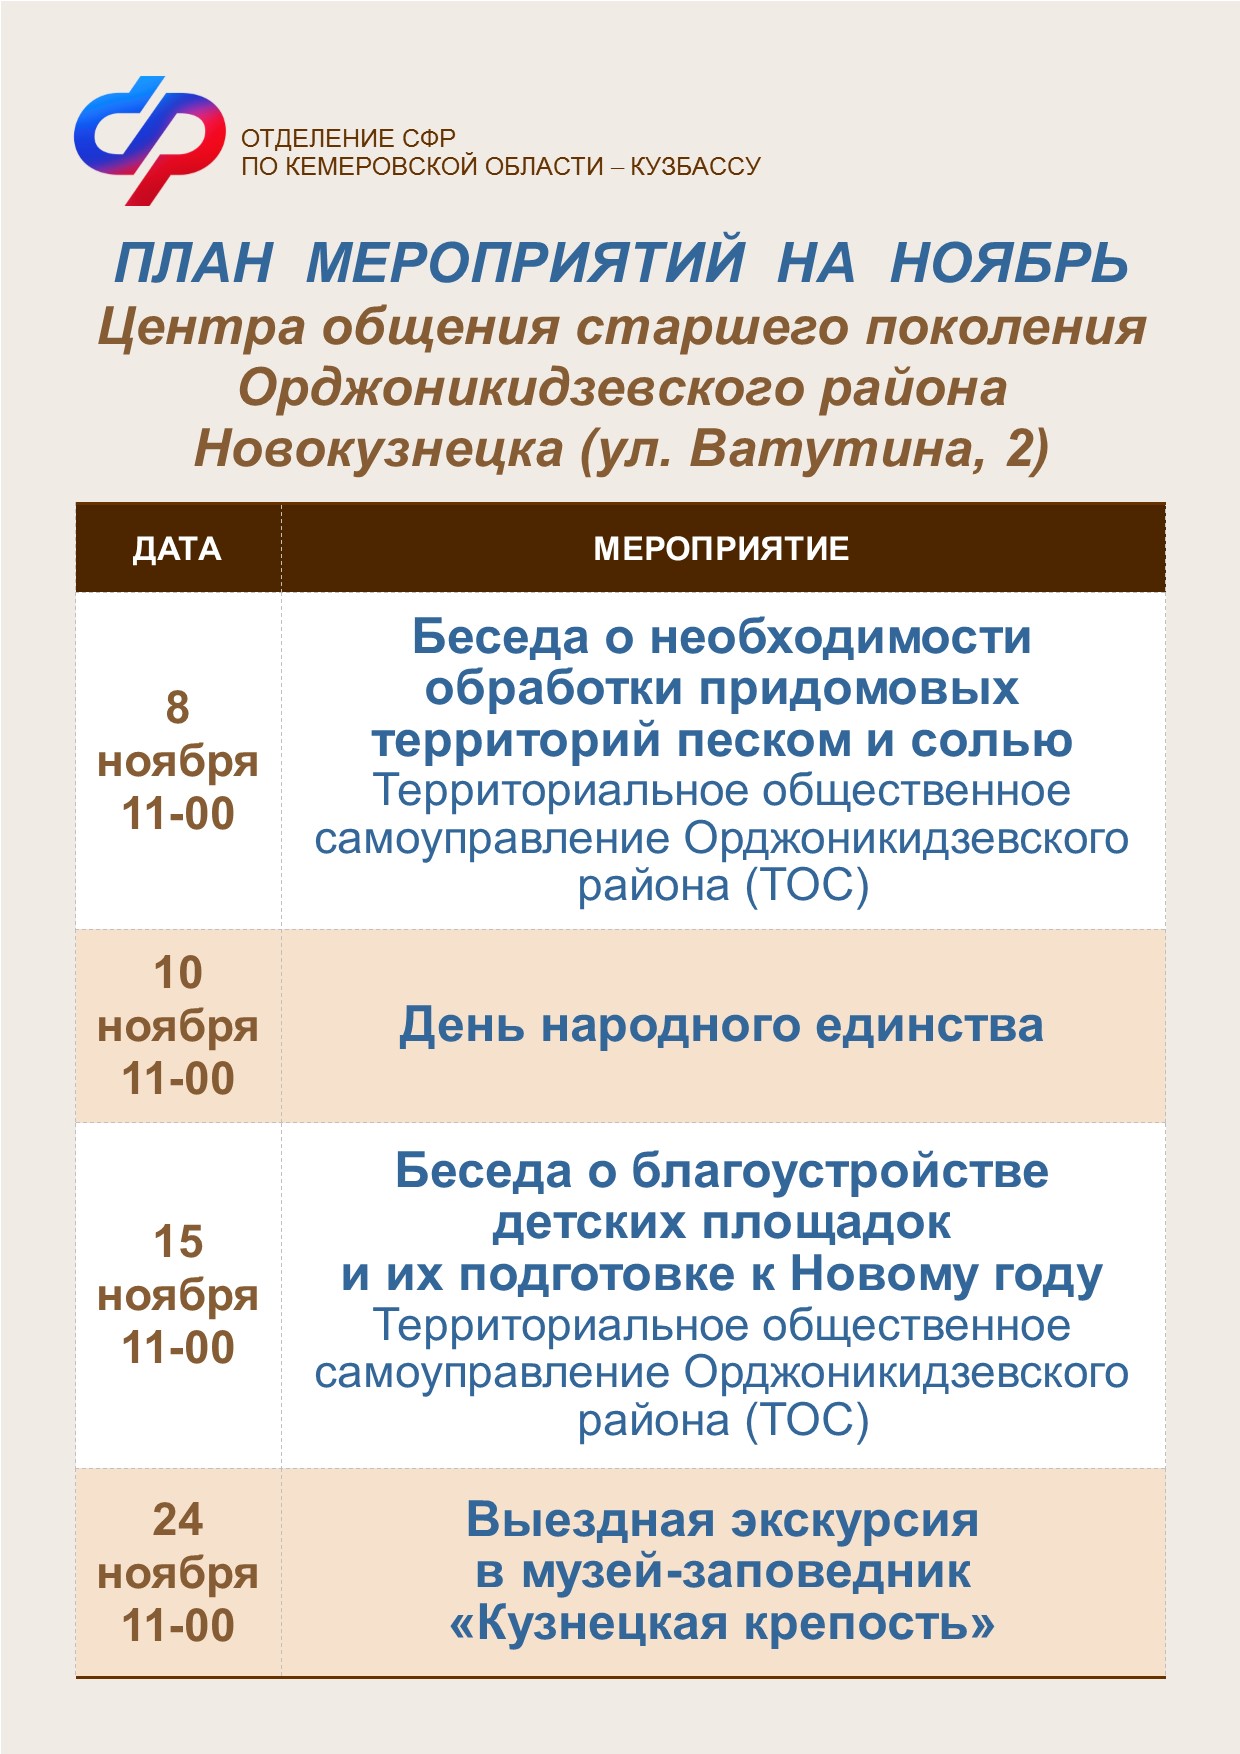 План работы на ноябрь Центра общения старшего поколения Орджоникидзевскиого района Новокузнецка